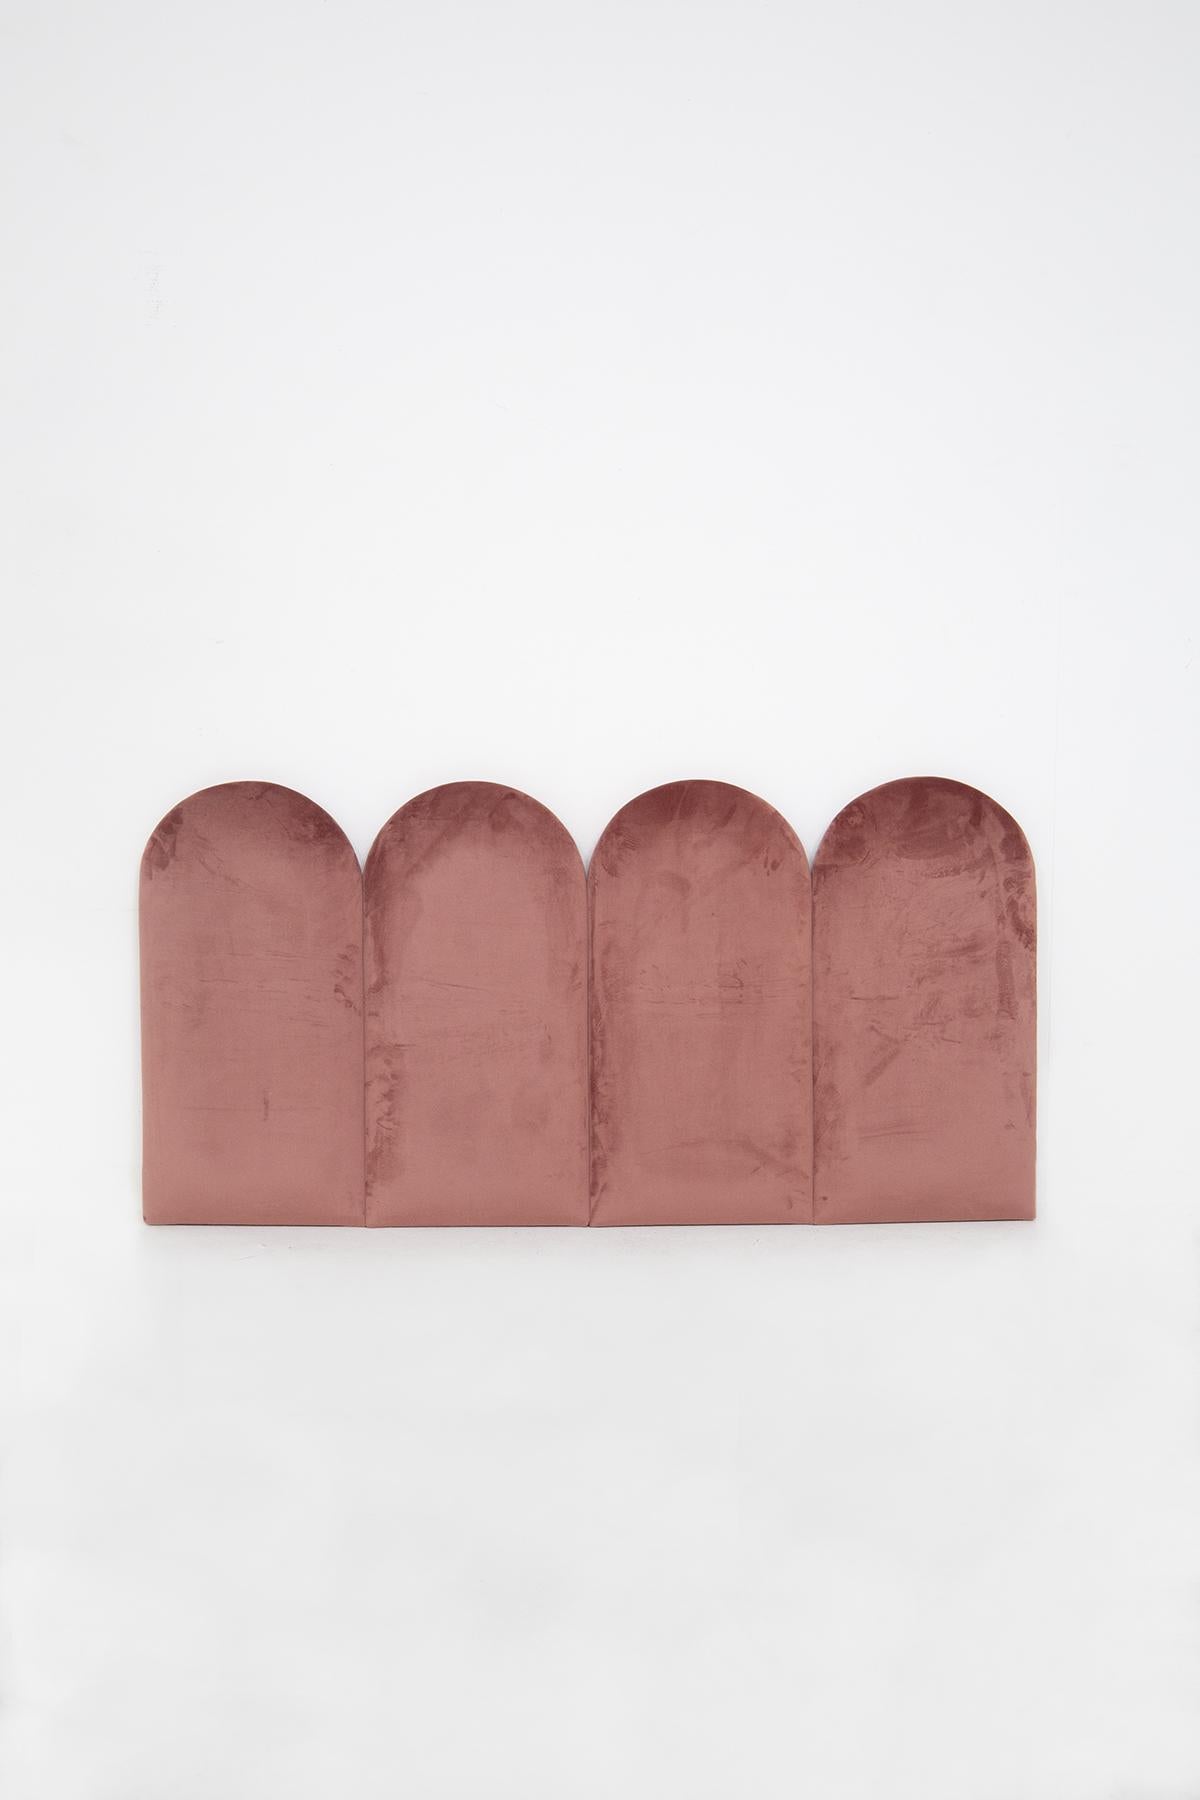 Wunderschönes personalisierbares Bettkopfteil, hergestellt in Italien von Vinta Domus, neue Produktion.
Das Kopfteil ist komplett aus einem fantastischen rosa Samt gefertigt, sehr weich und bequem. Die Struktur besteht aus Segmenten, die sich an der